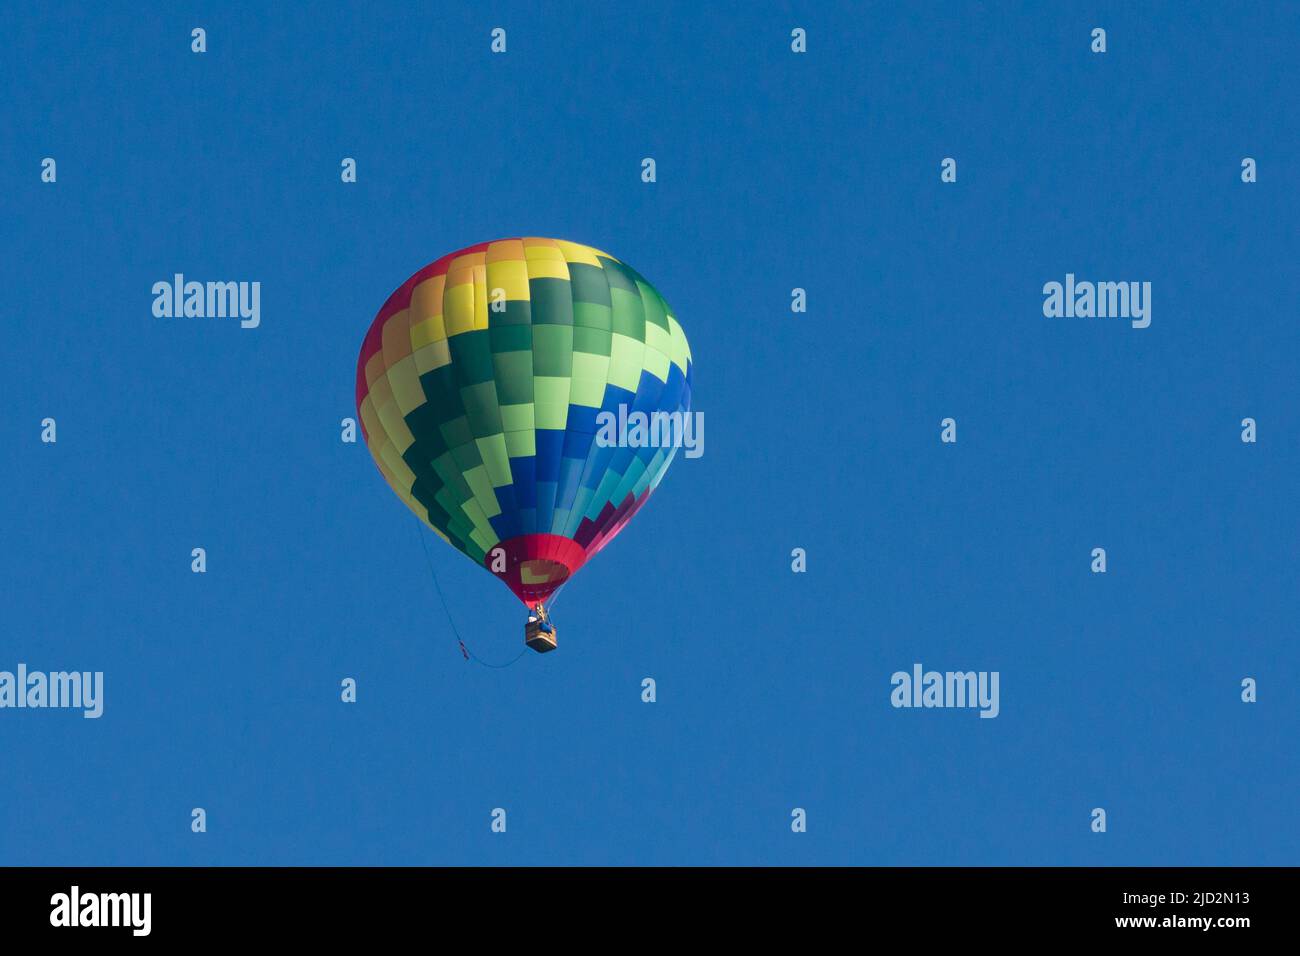 Ballon à air chaud Lindstrand LTL série 1-105 coloré dans un ciel bleu clair Banque D'Images